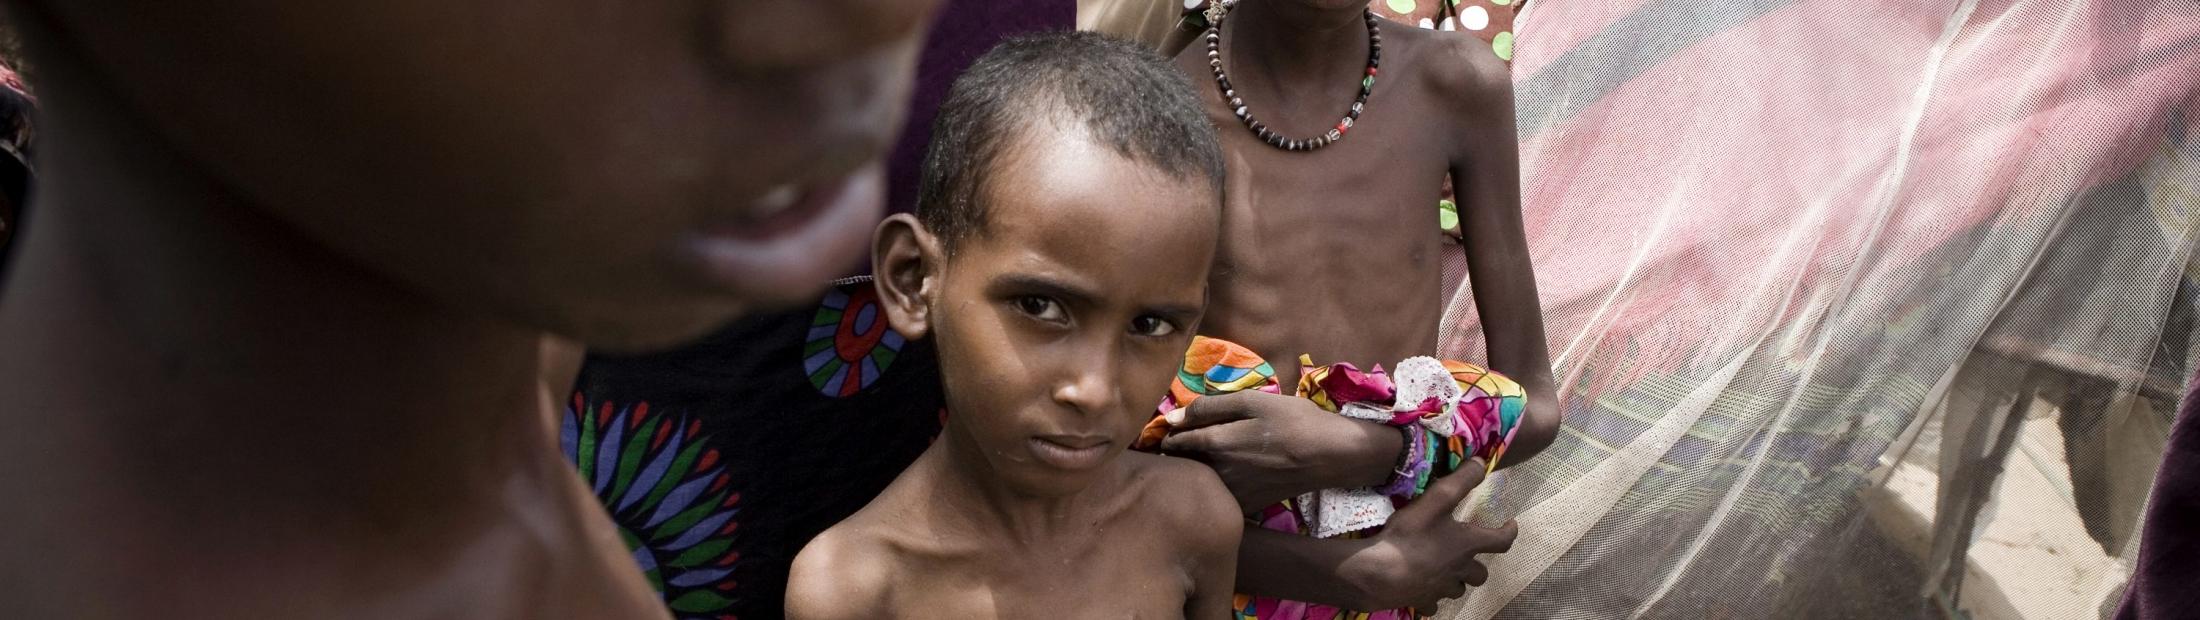 Sequía y desplazamiento en Somalia: “Mi casa ya no es más que polvo y hambre”